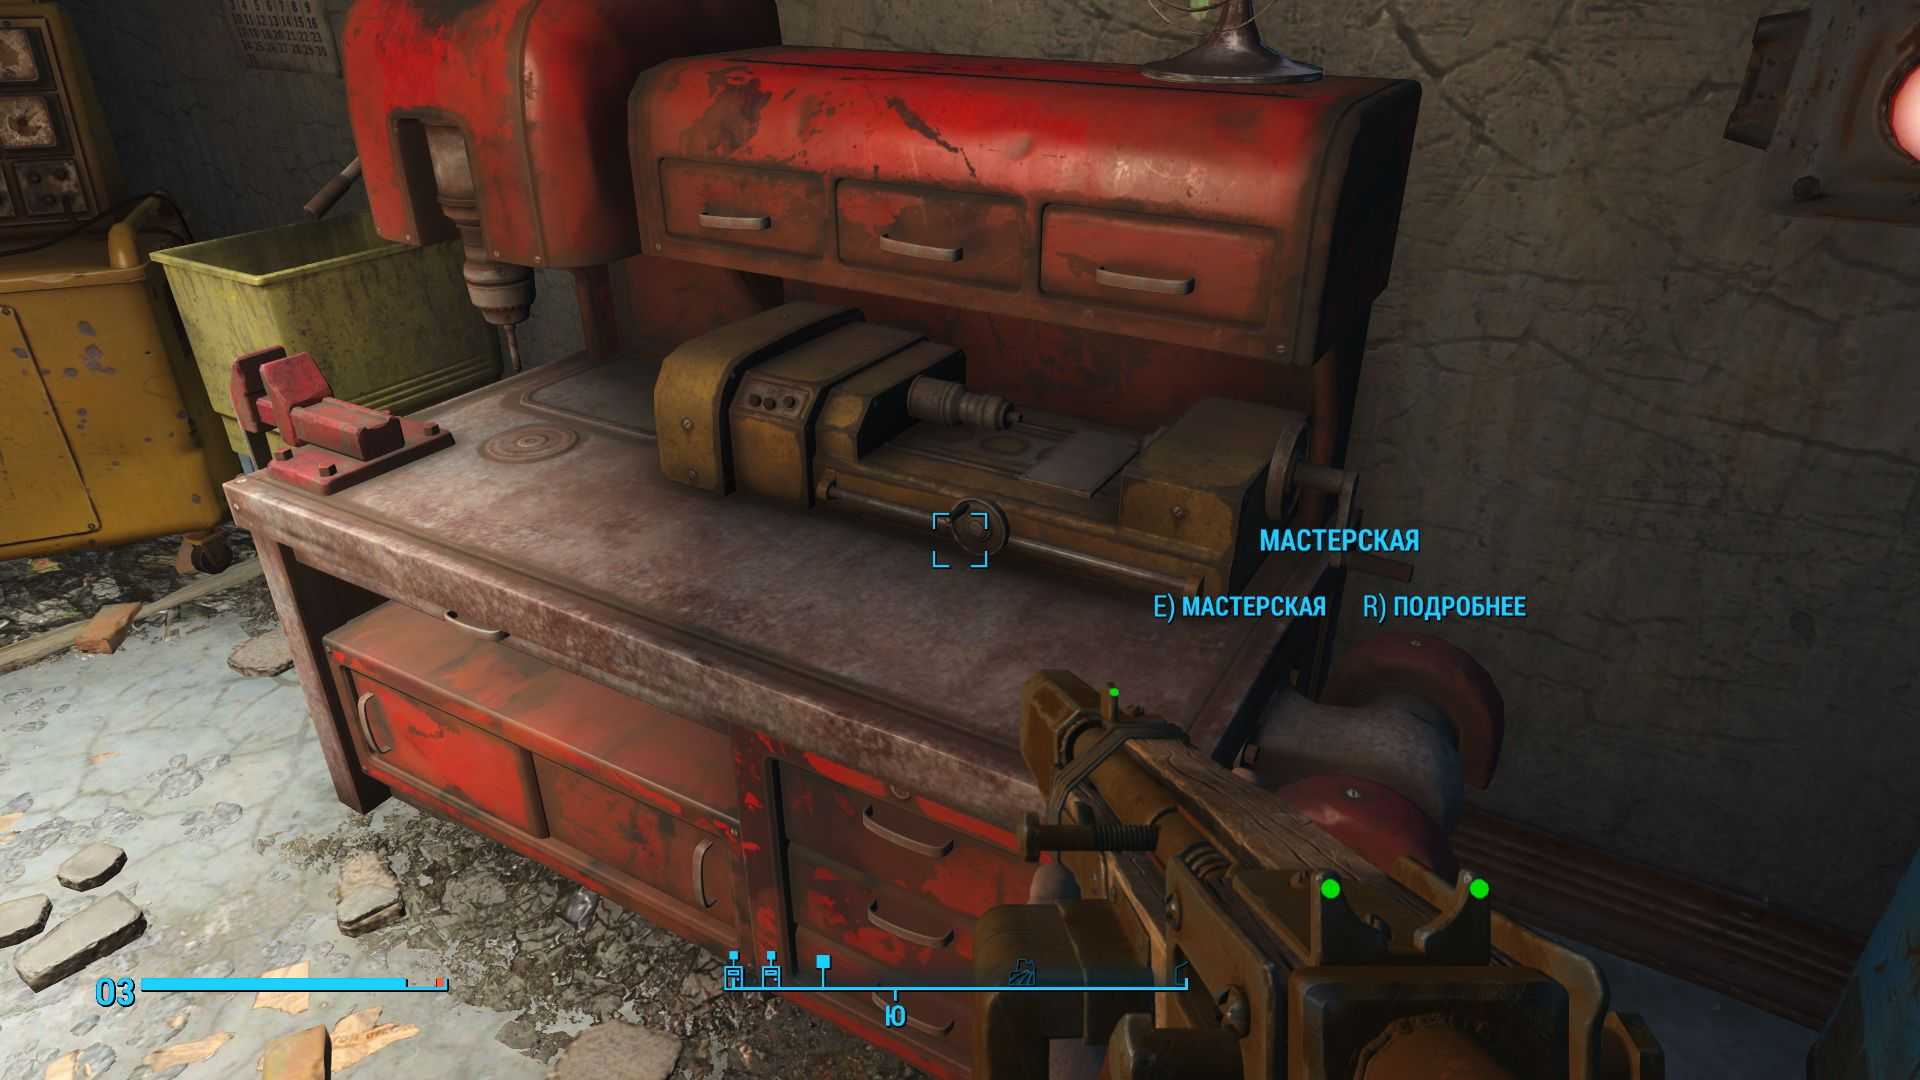 Fallout 4 верстак для роботов все модификации фото 64